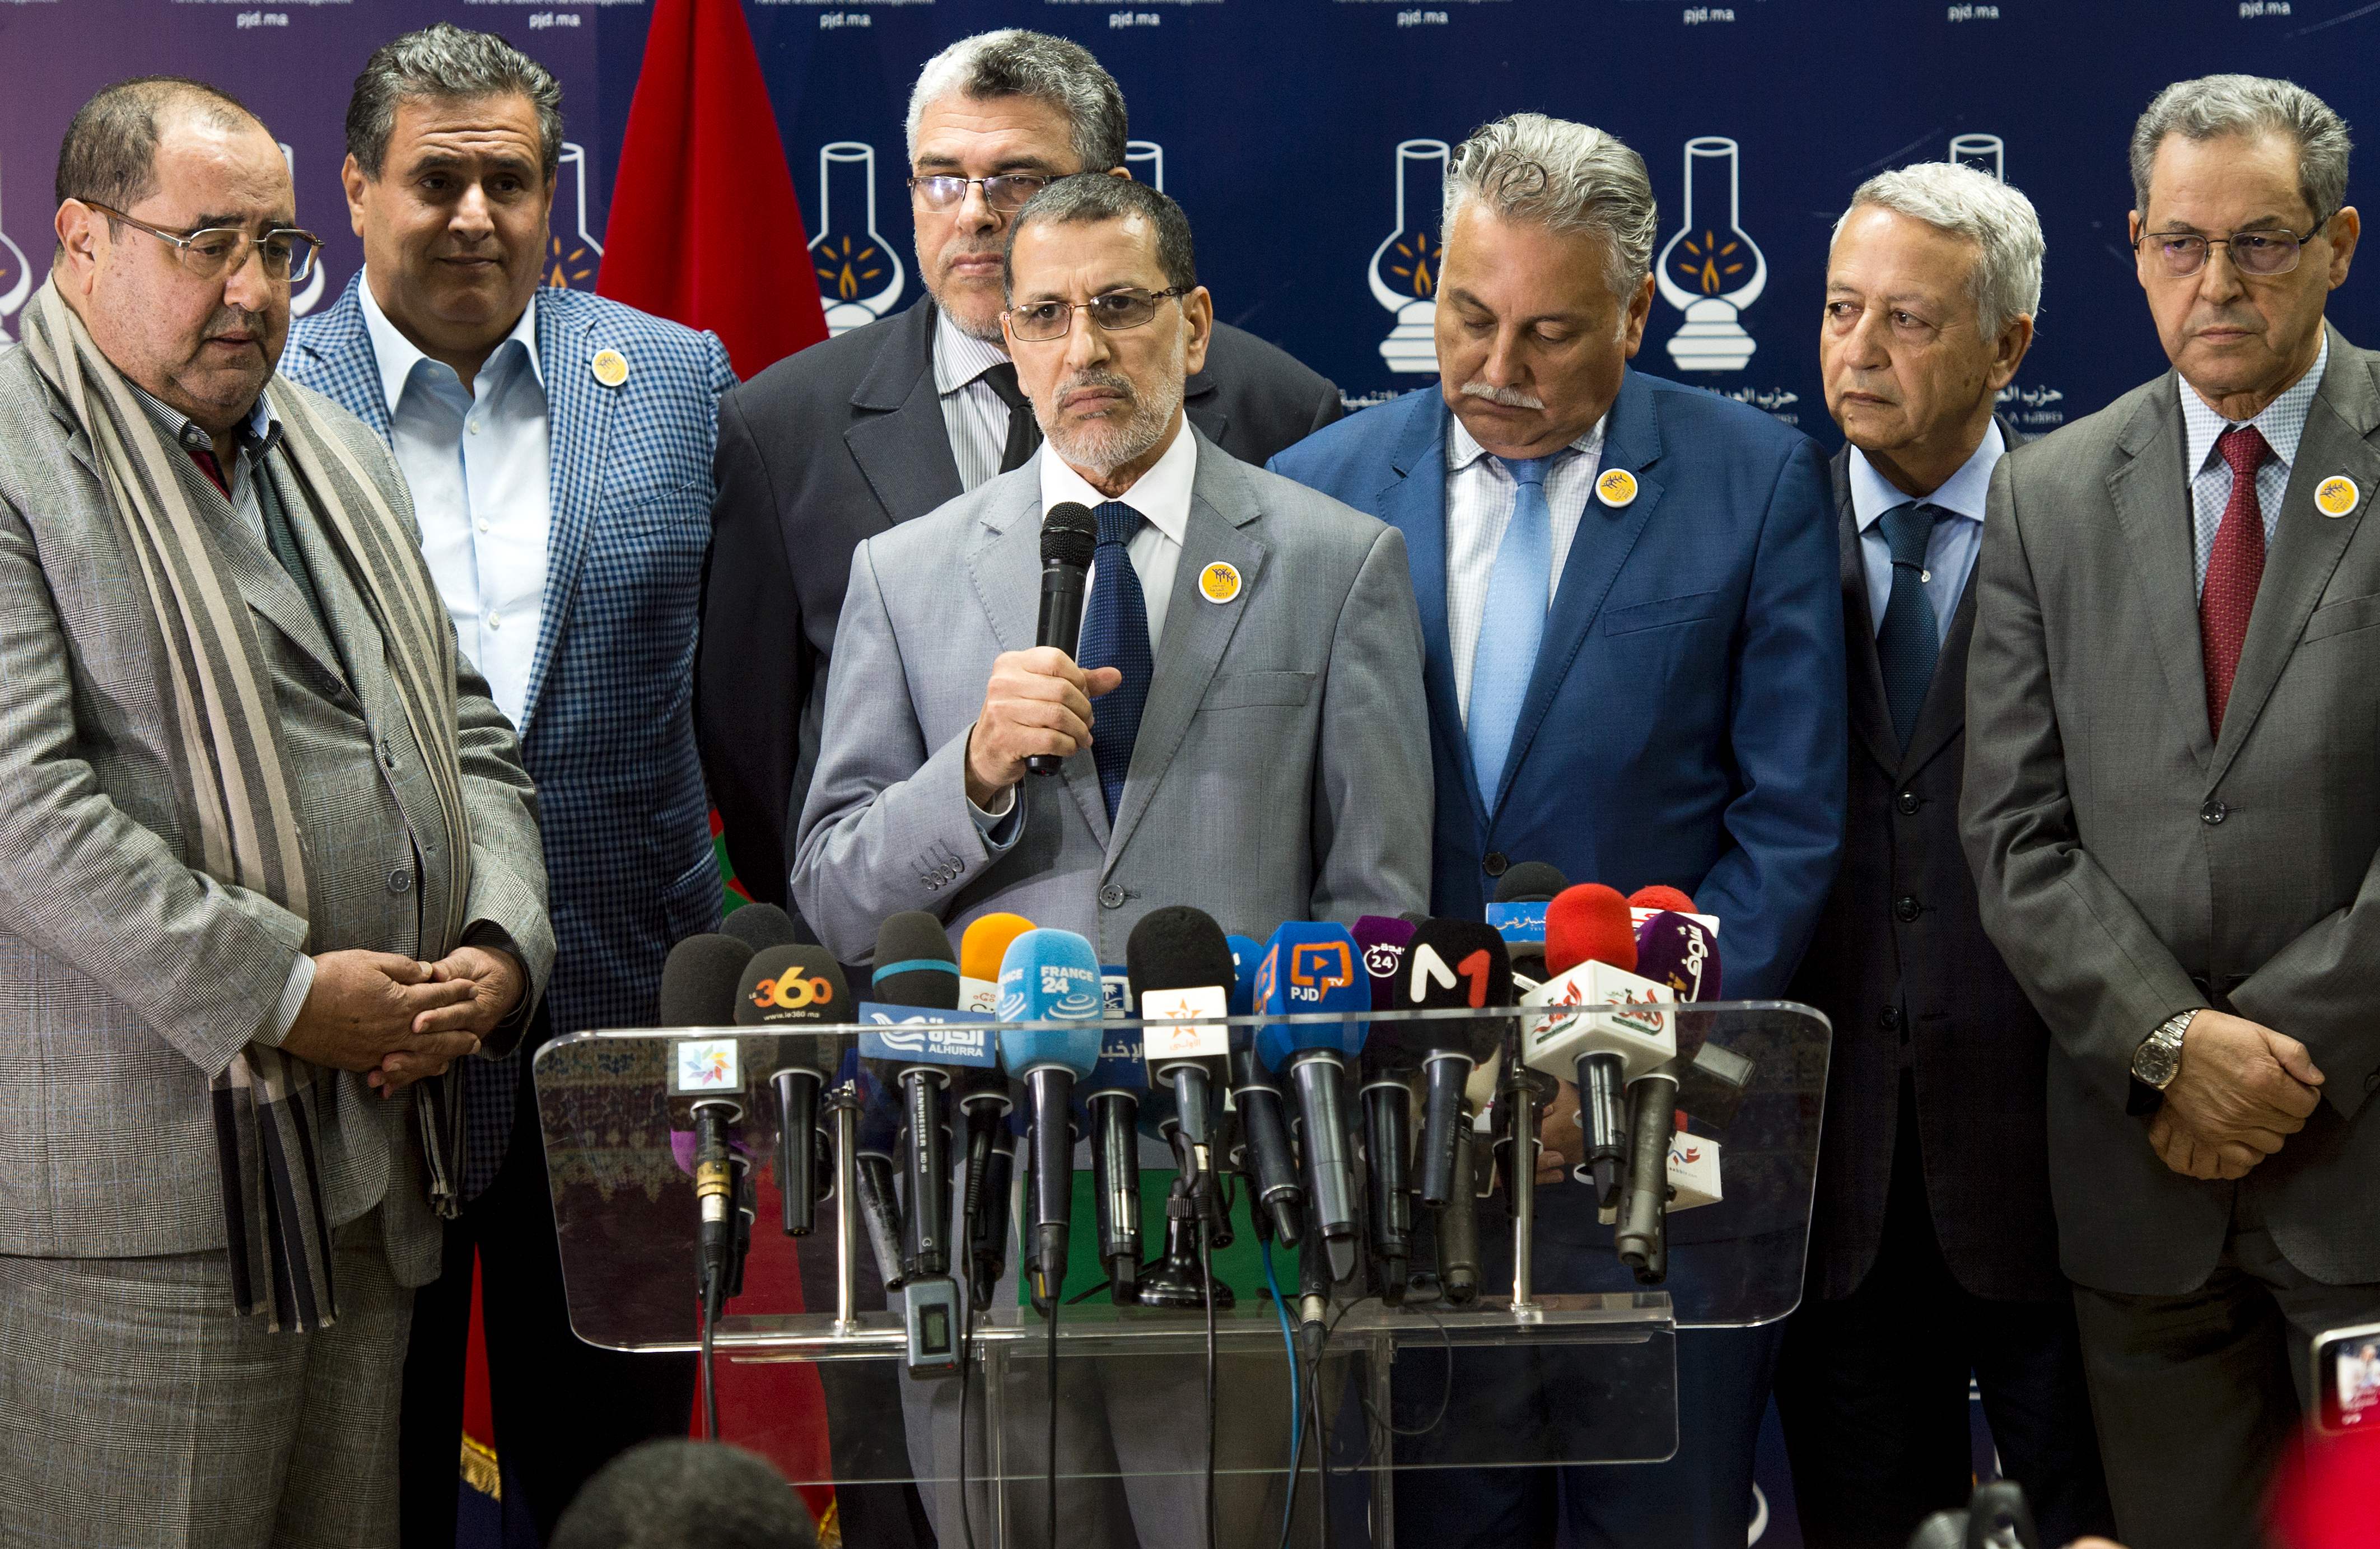 جانب من مؤتمر إعلان اسماء الحكومة المغربية الجديدة